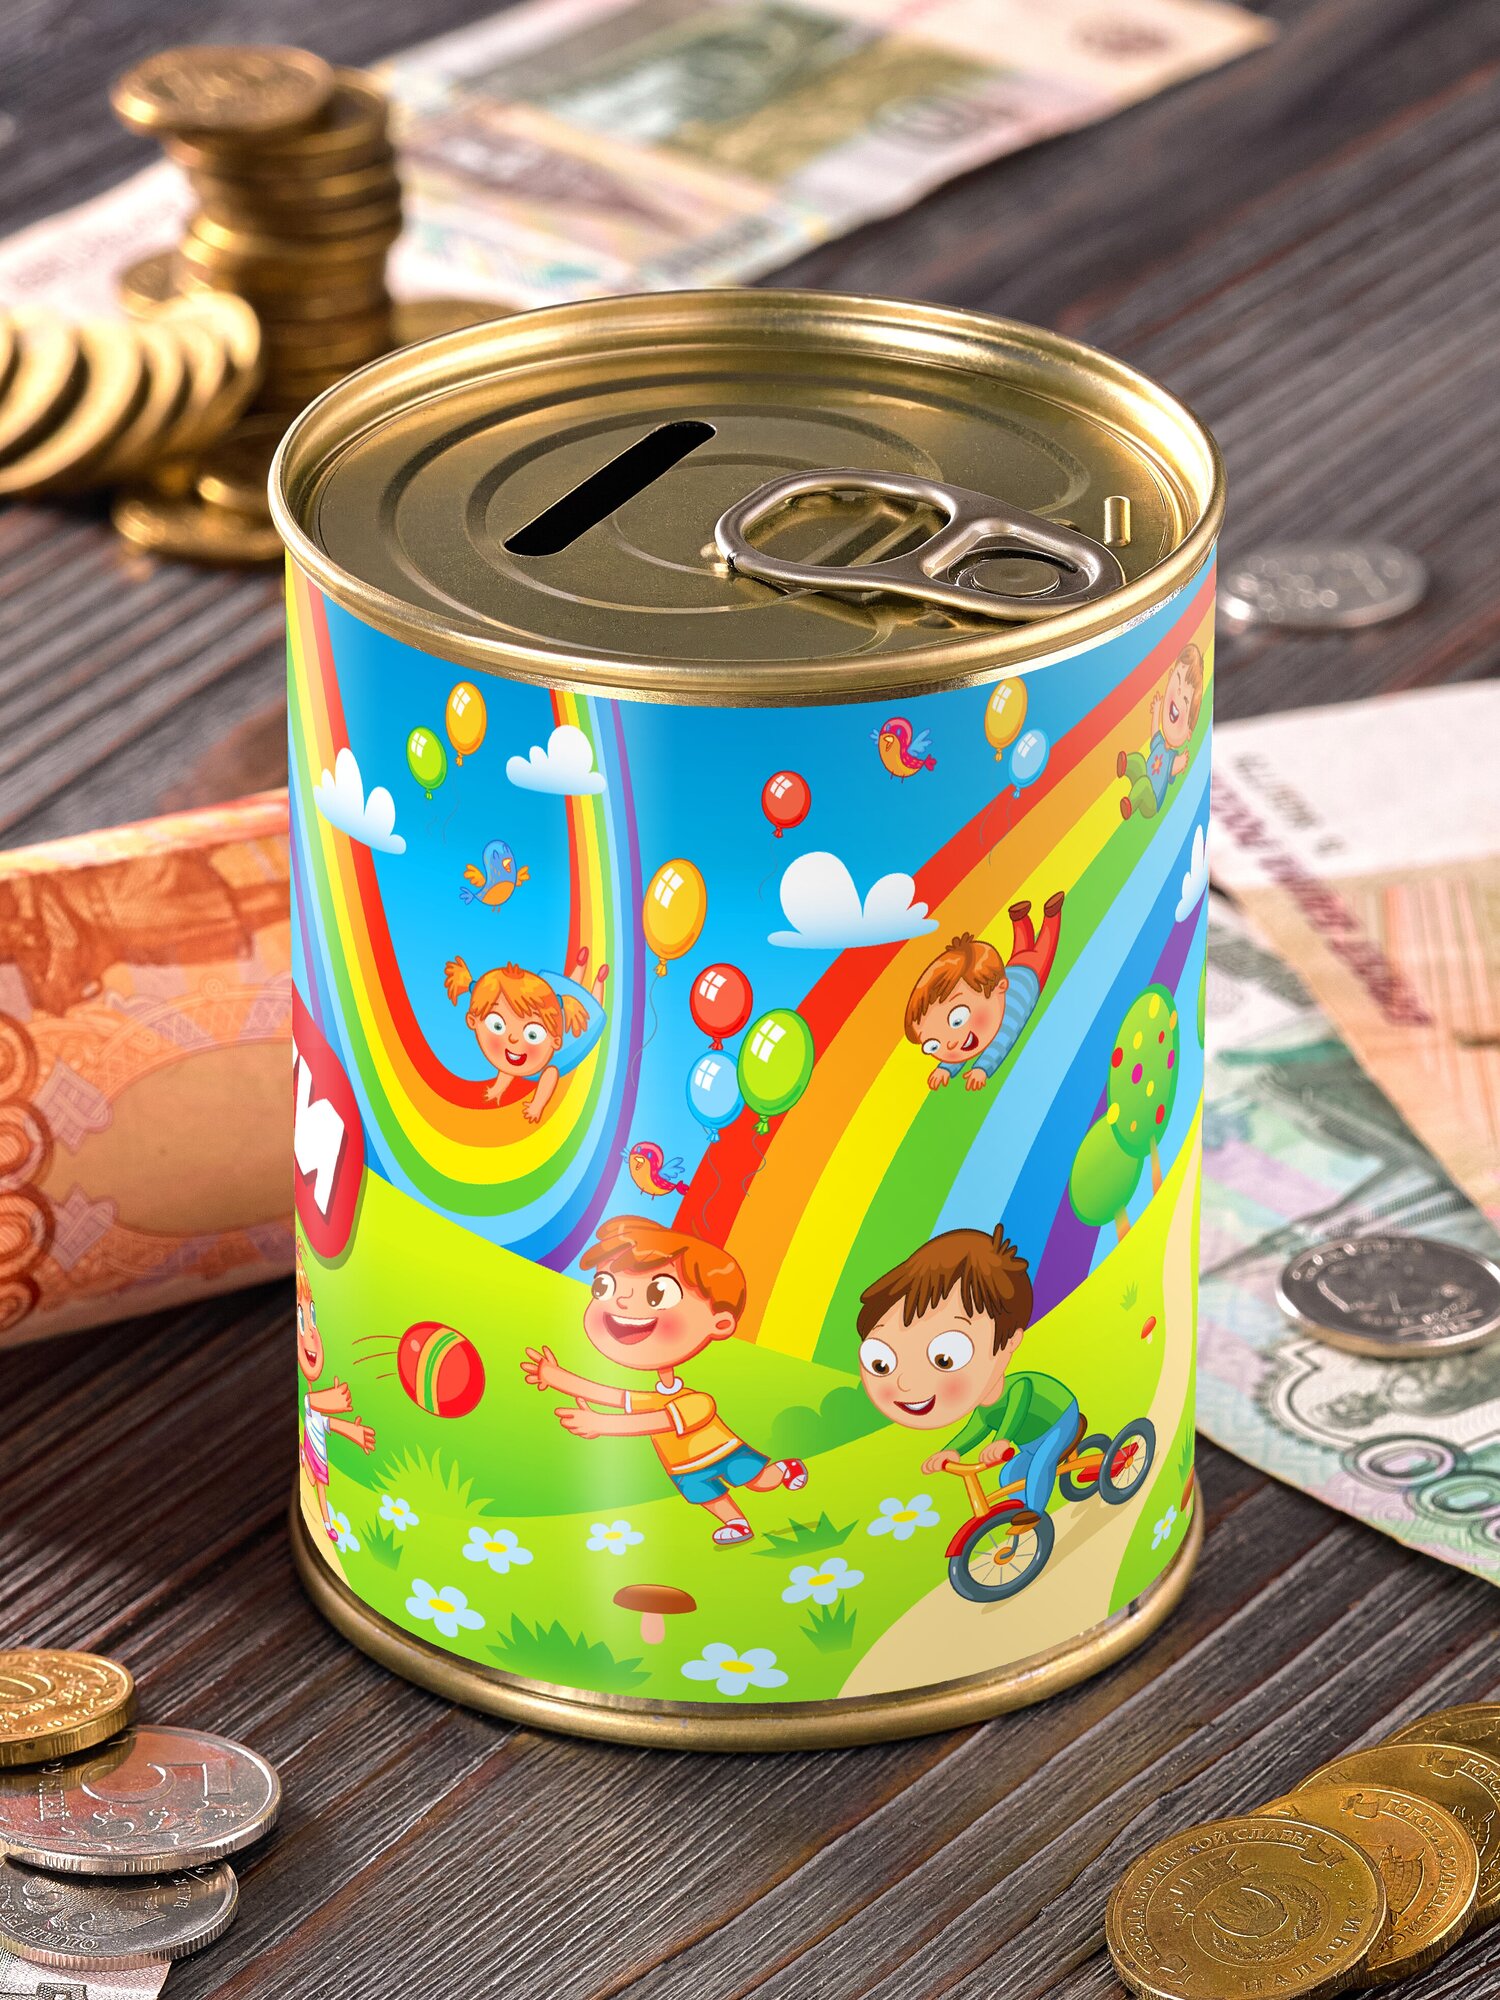 Копилка "Коплю на игрушки - радуга" для денег подарок сейф ребенку мальчику девочке детская выпускной